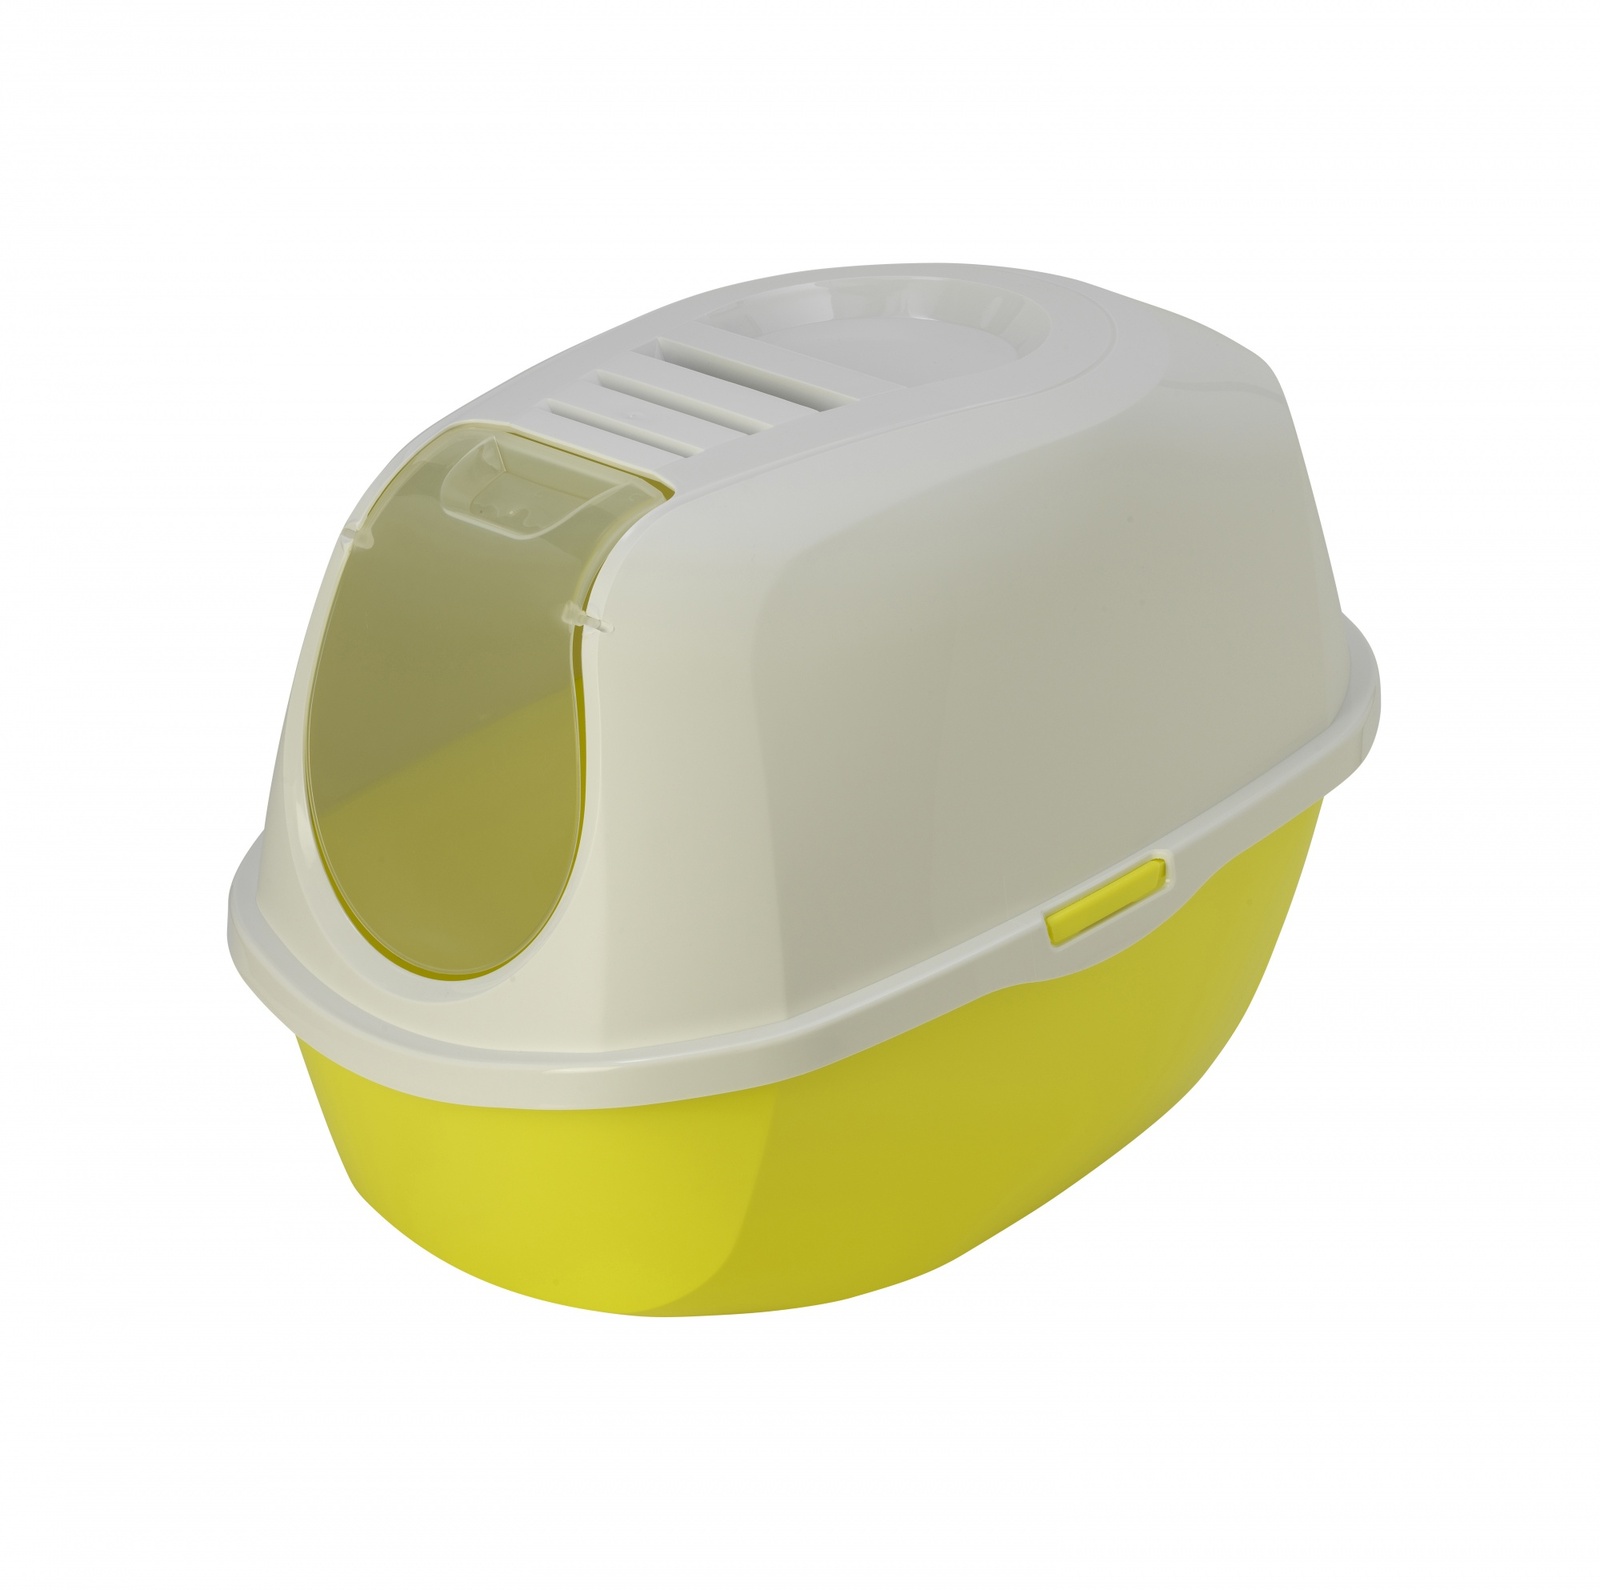 Moderna туалет-домик SmartCat с угольным фильтром, 54х40х41см,  лимонно-желтый (1,2 кг)